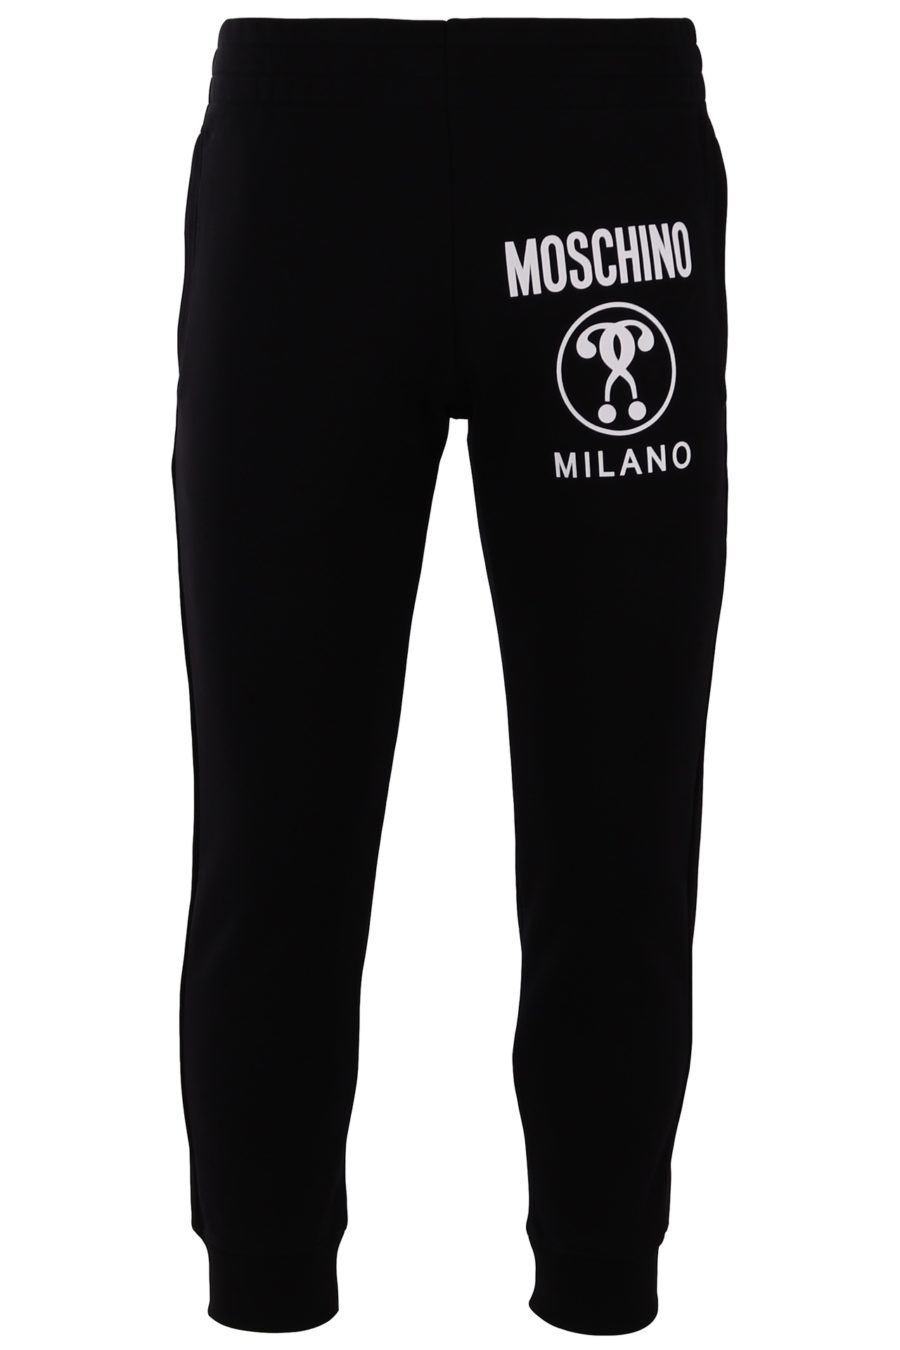 Hose Moschino Couture schwarz mit großem Logo - 482c517e30947e9e95ad07b6e8c33182dc14b19c